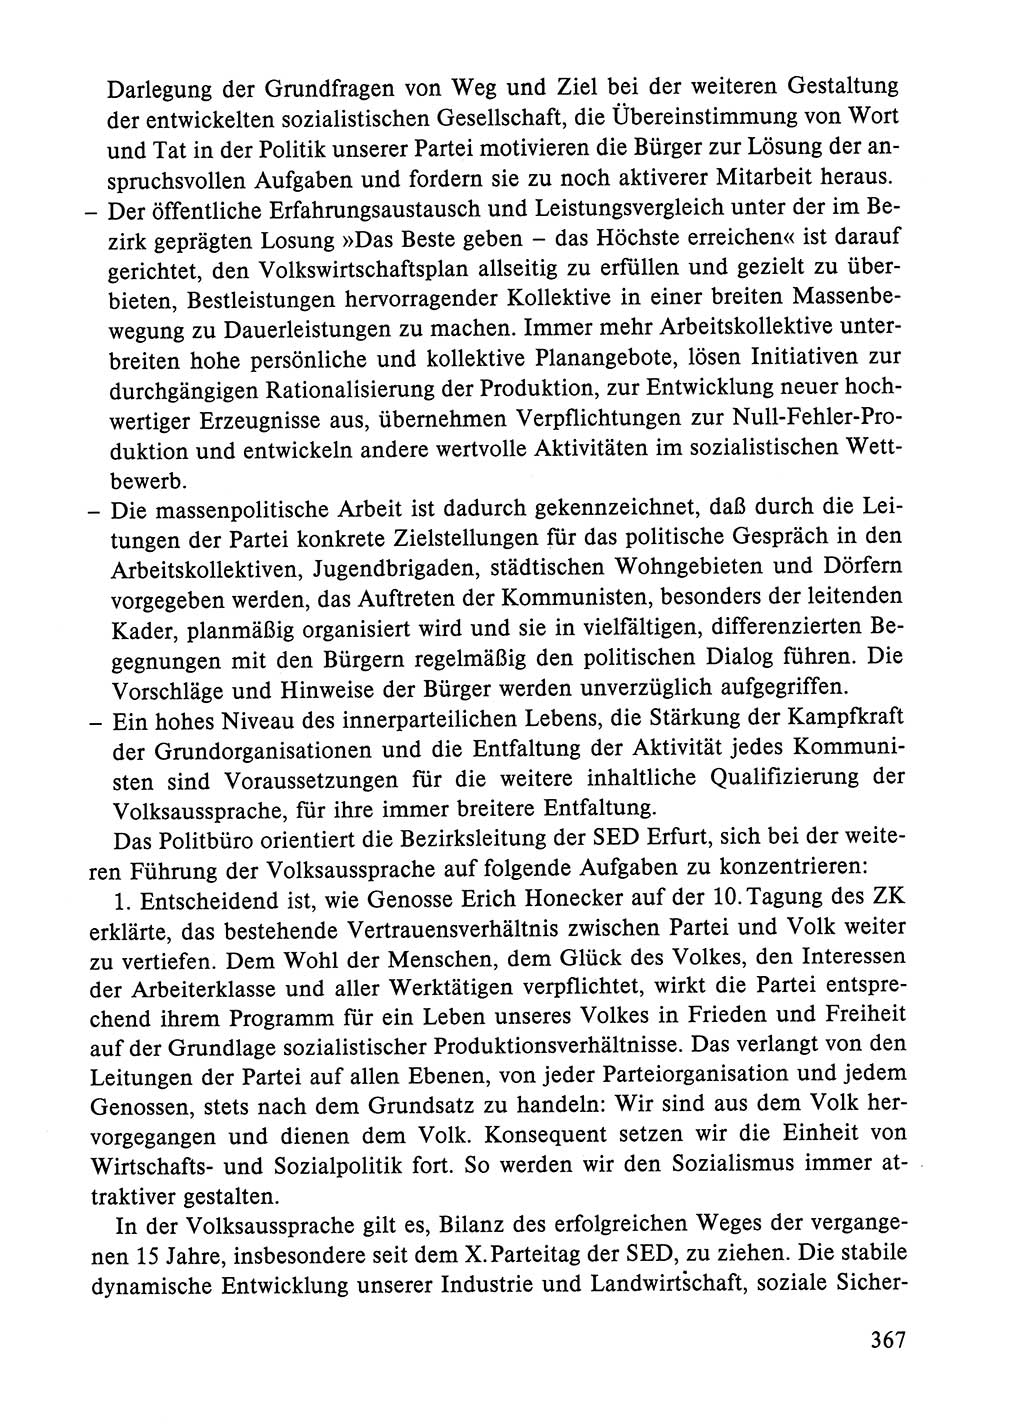 Dokumente der Sozialistischen Einheitspartei Deutschlands (SED) [Deutsche Demokratische Republik (DDR)] 1984-1985, Seite 367 (Dok. SED DDR 1984-1985, S. 367)